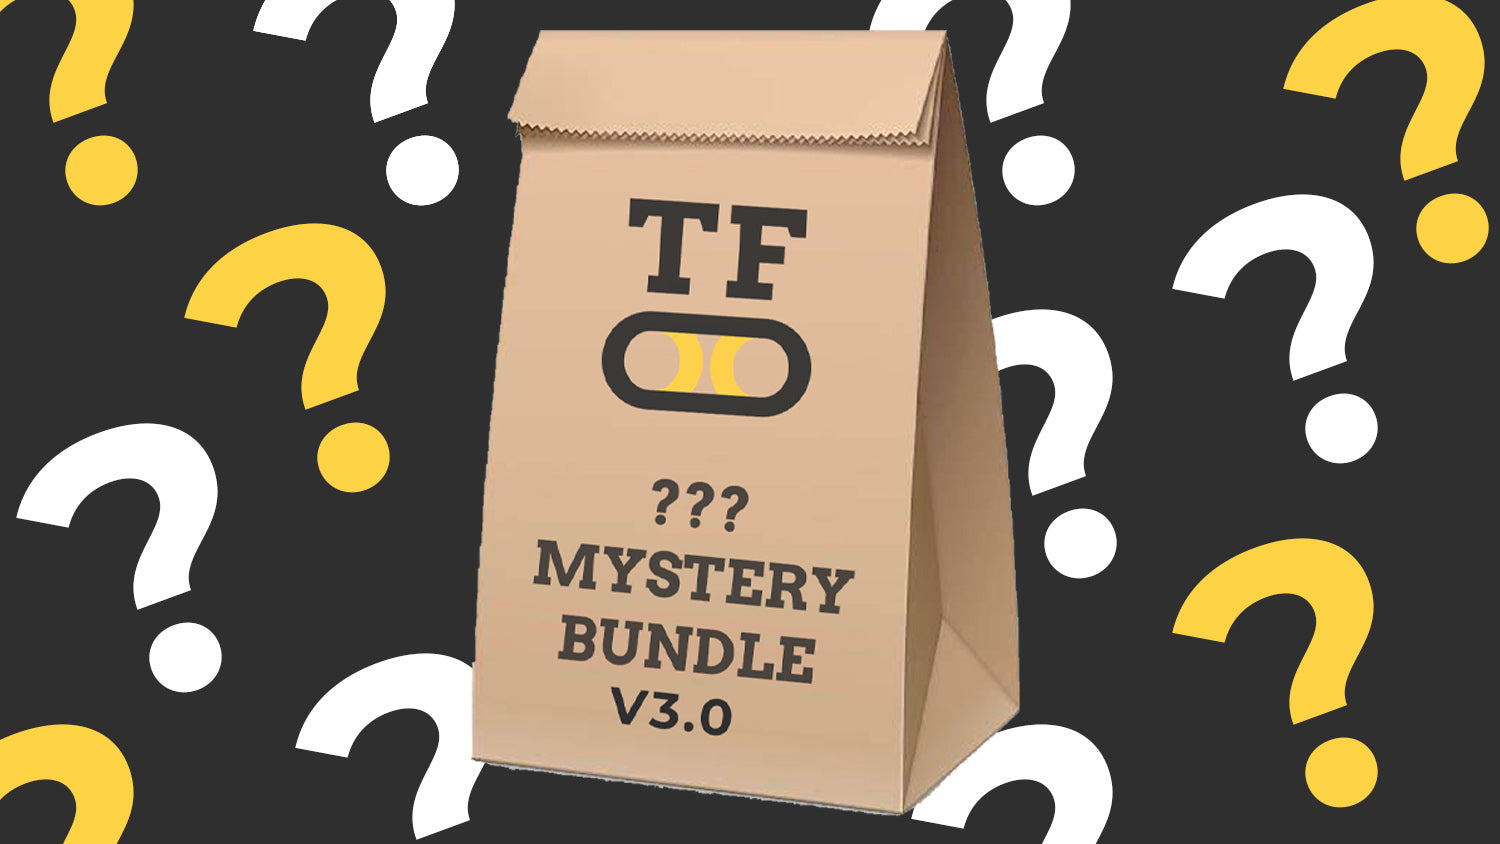 Mystery Bundle V3.0 has arrived